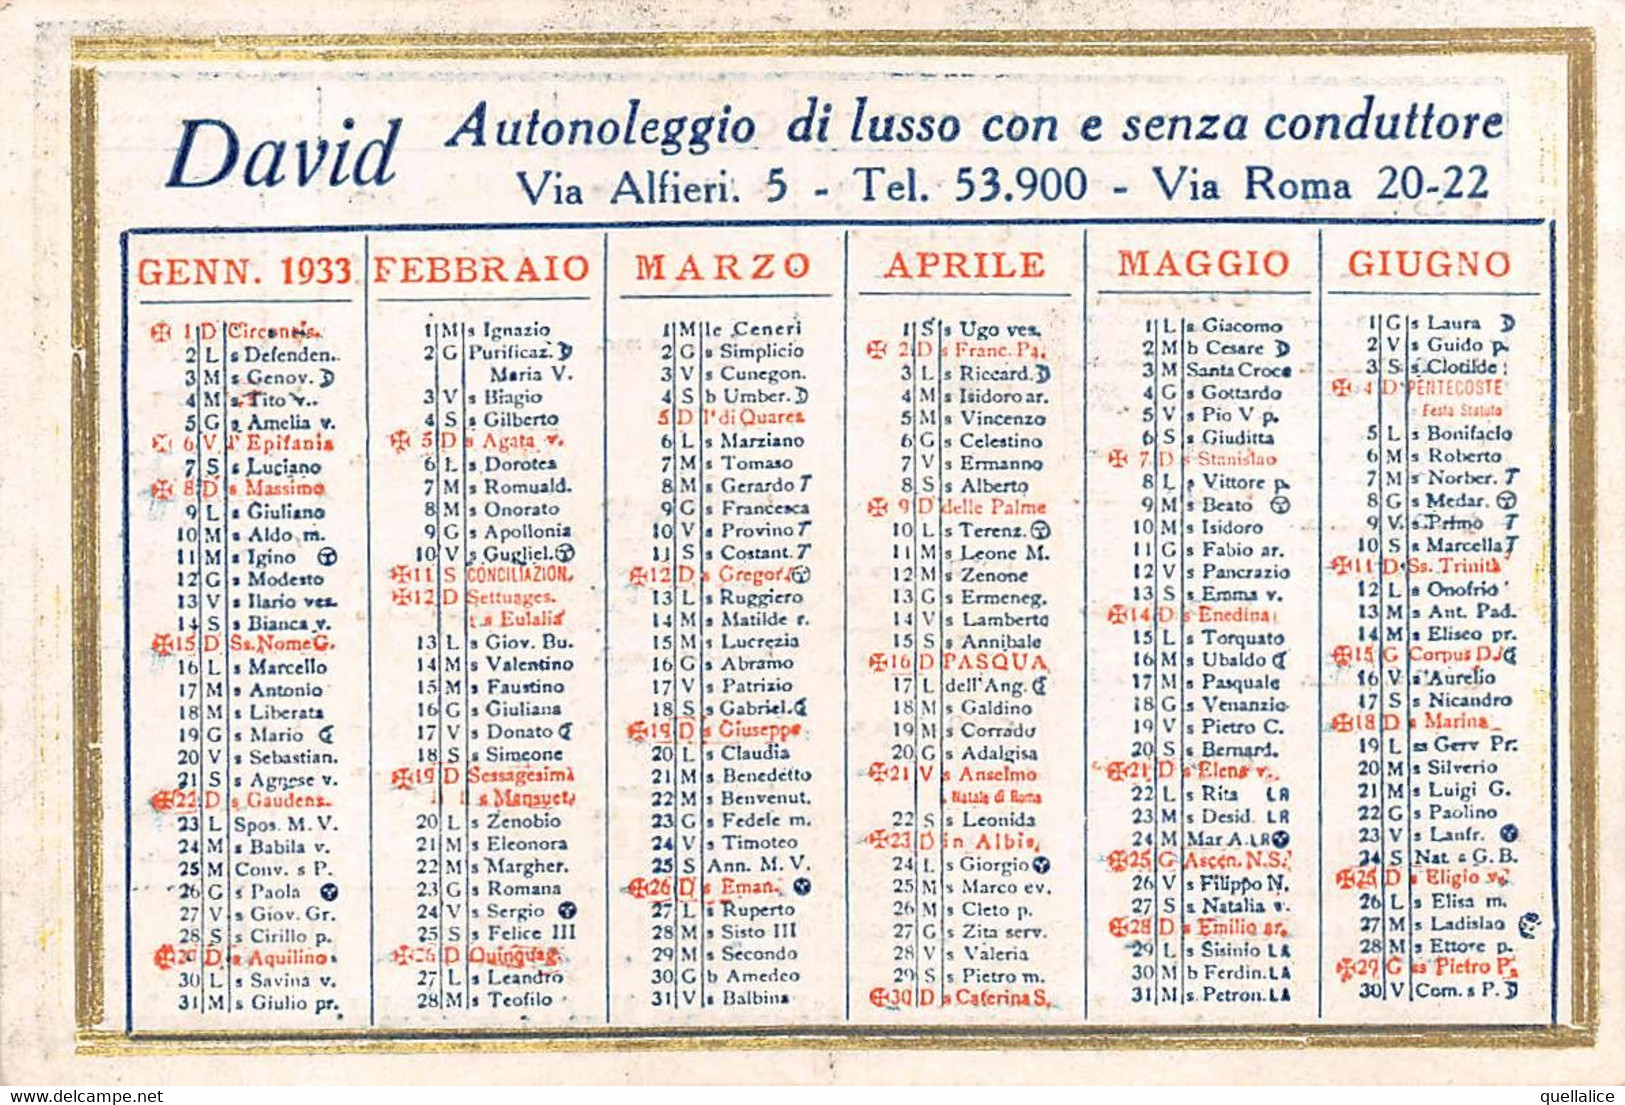 02089 "TORINO - DAVID AUTONOLEGGIO DI LUSSO CON E SENZA CONDUTTORE - CALENDARIETTO 1933" ORIG - Grand Format : 1921-40